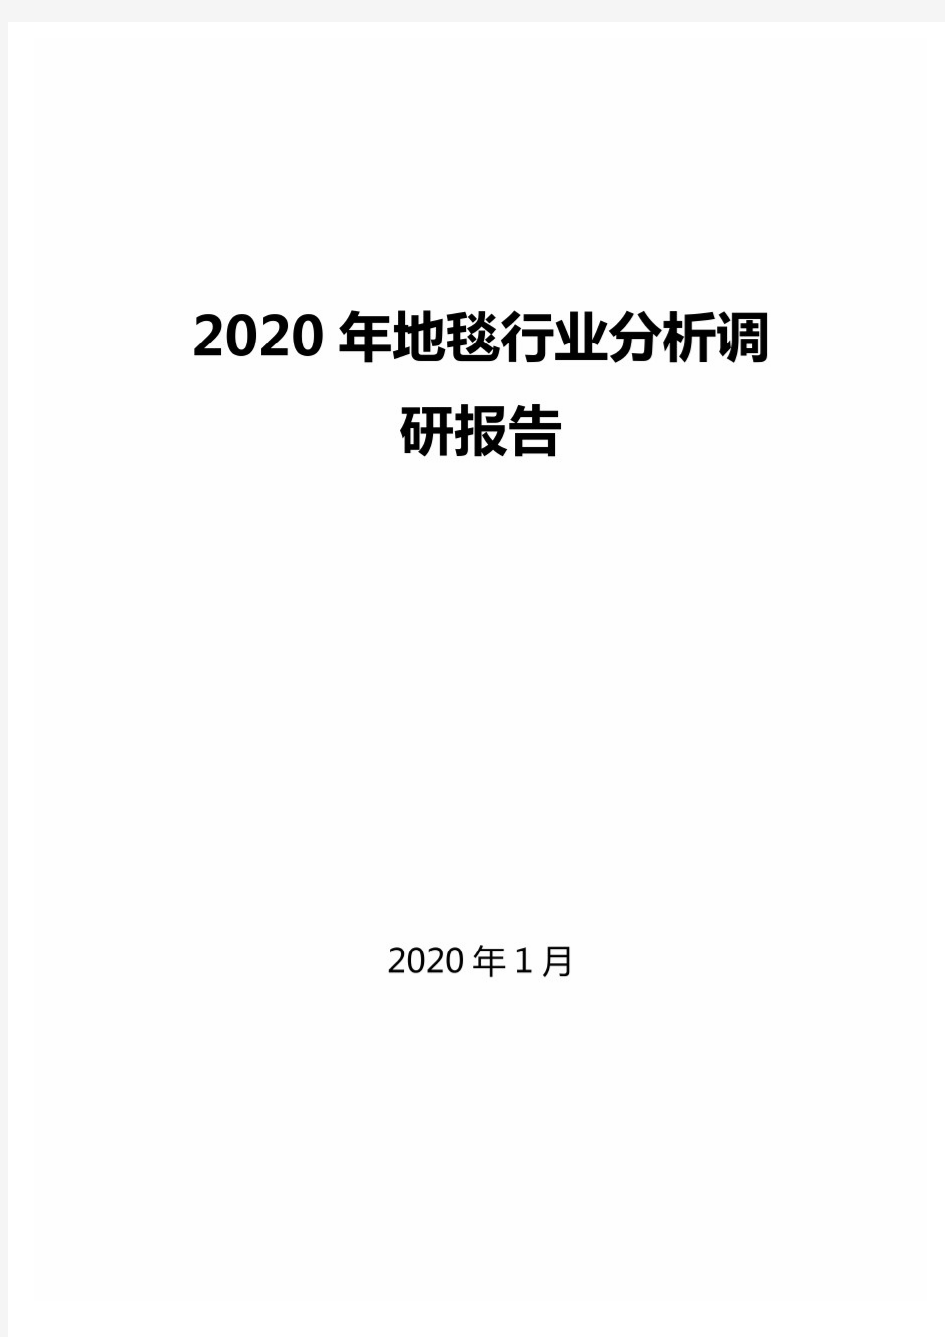 2020年地毯行业分析调研报告